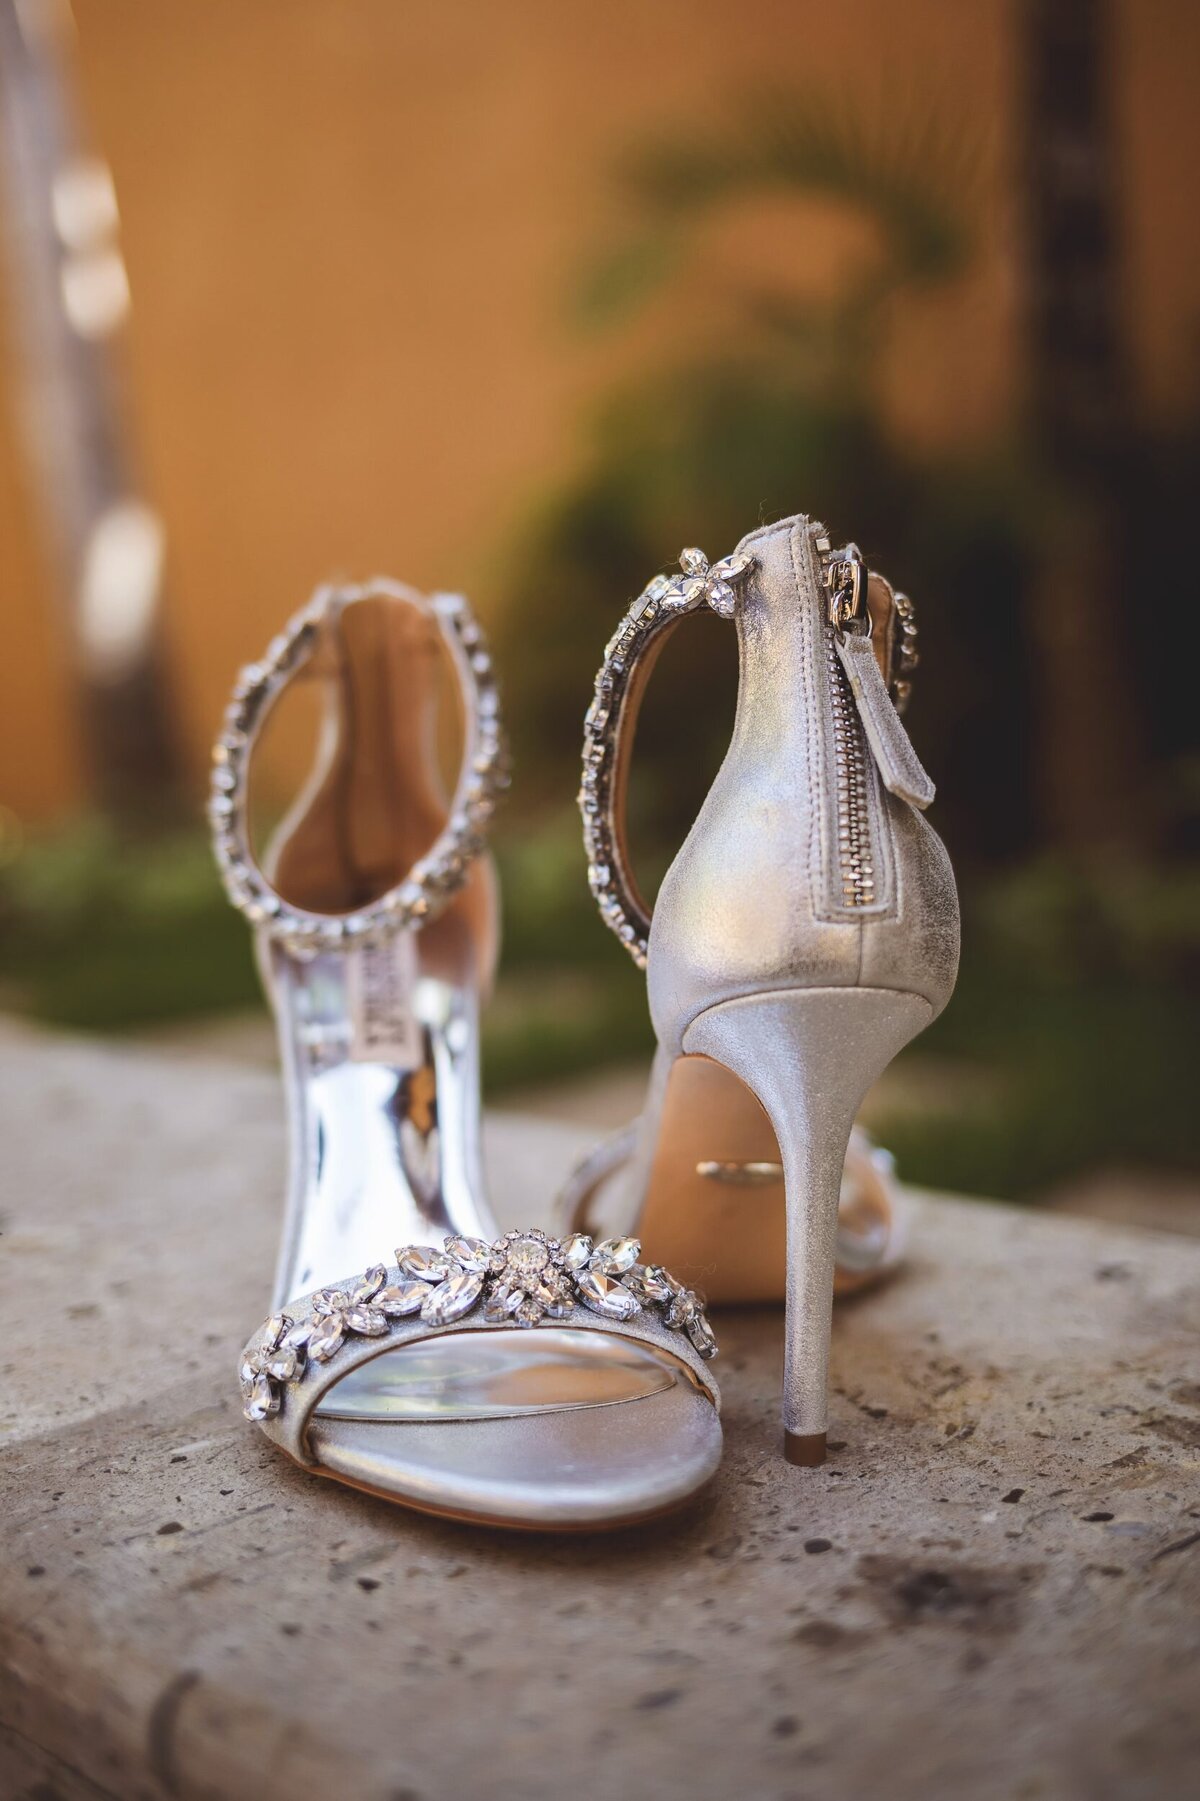 Brides shoes at wedding in Riviera Maya